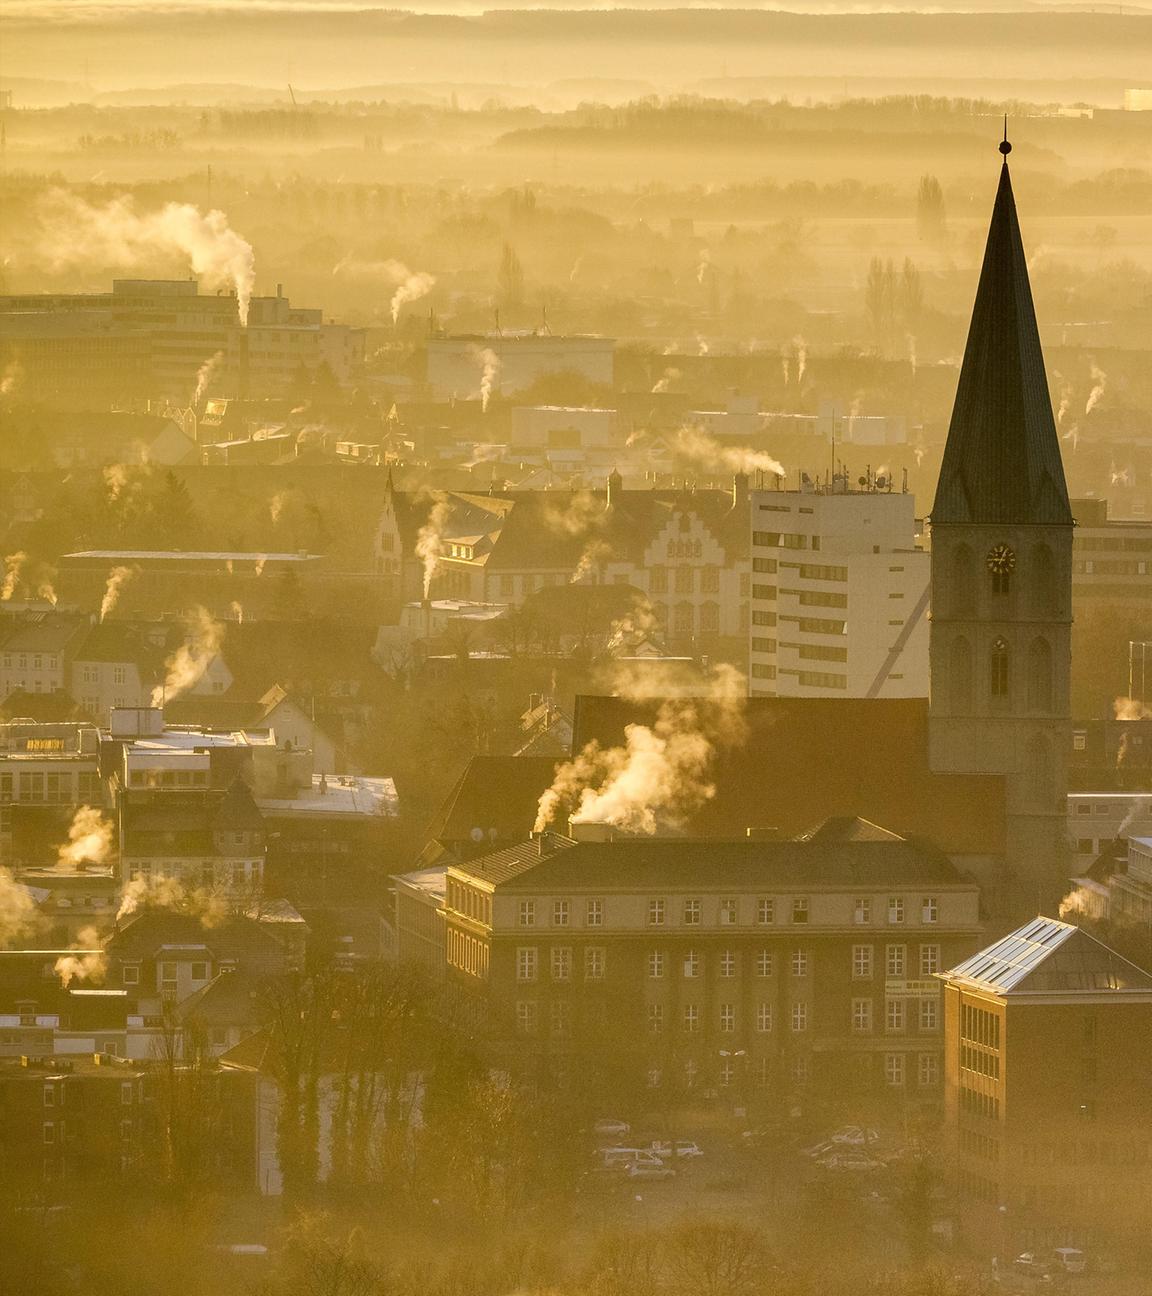 Archiv: Morgennebel über der Innenstadt von Hamm mit Pauluskirche, 11.12.2013, Luftbild,